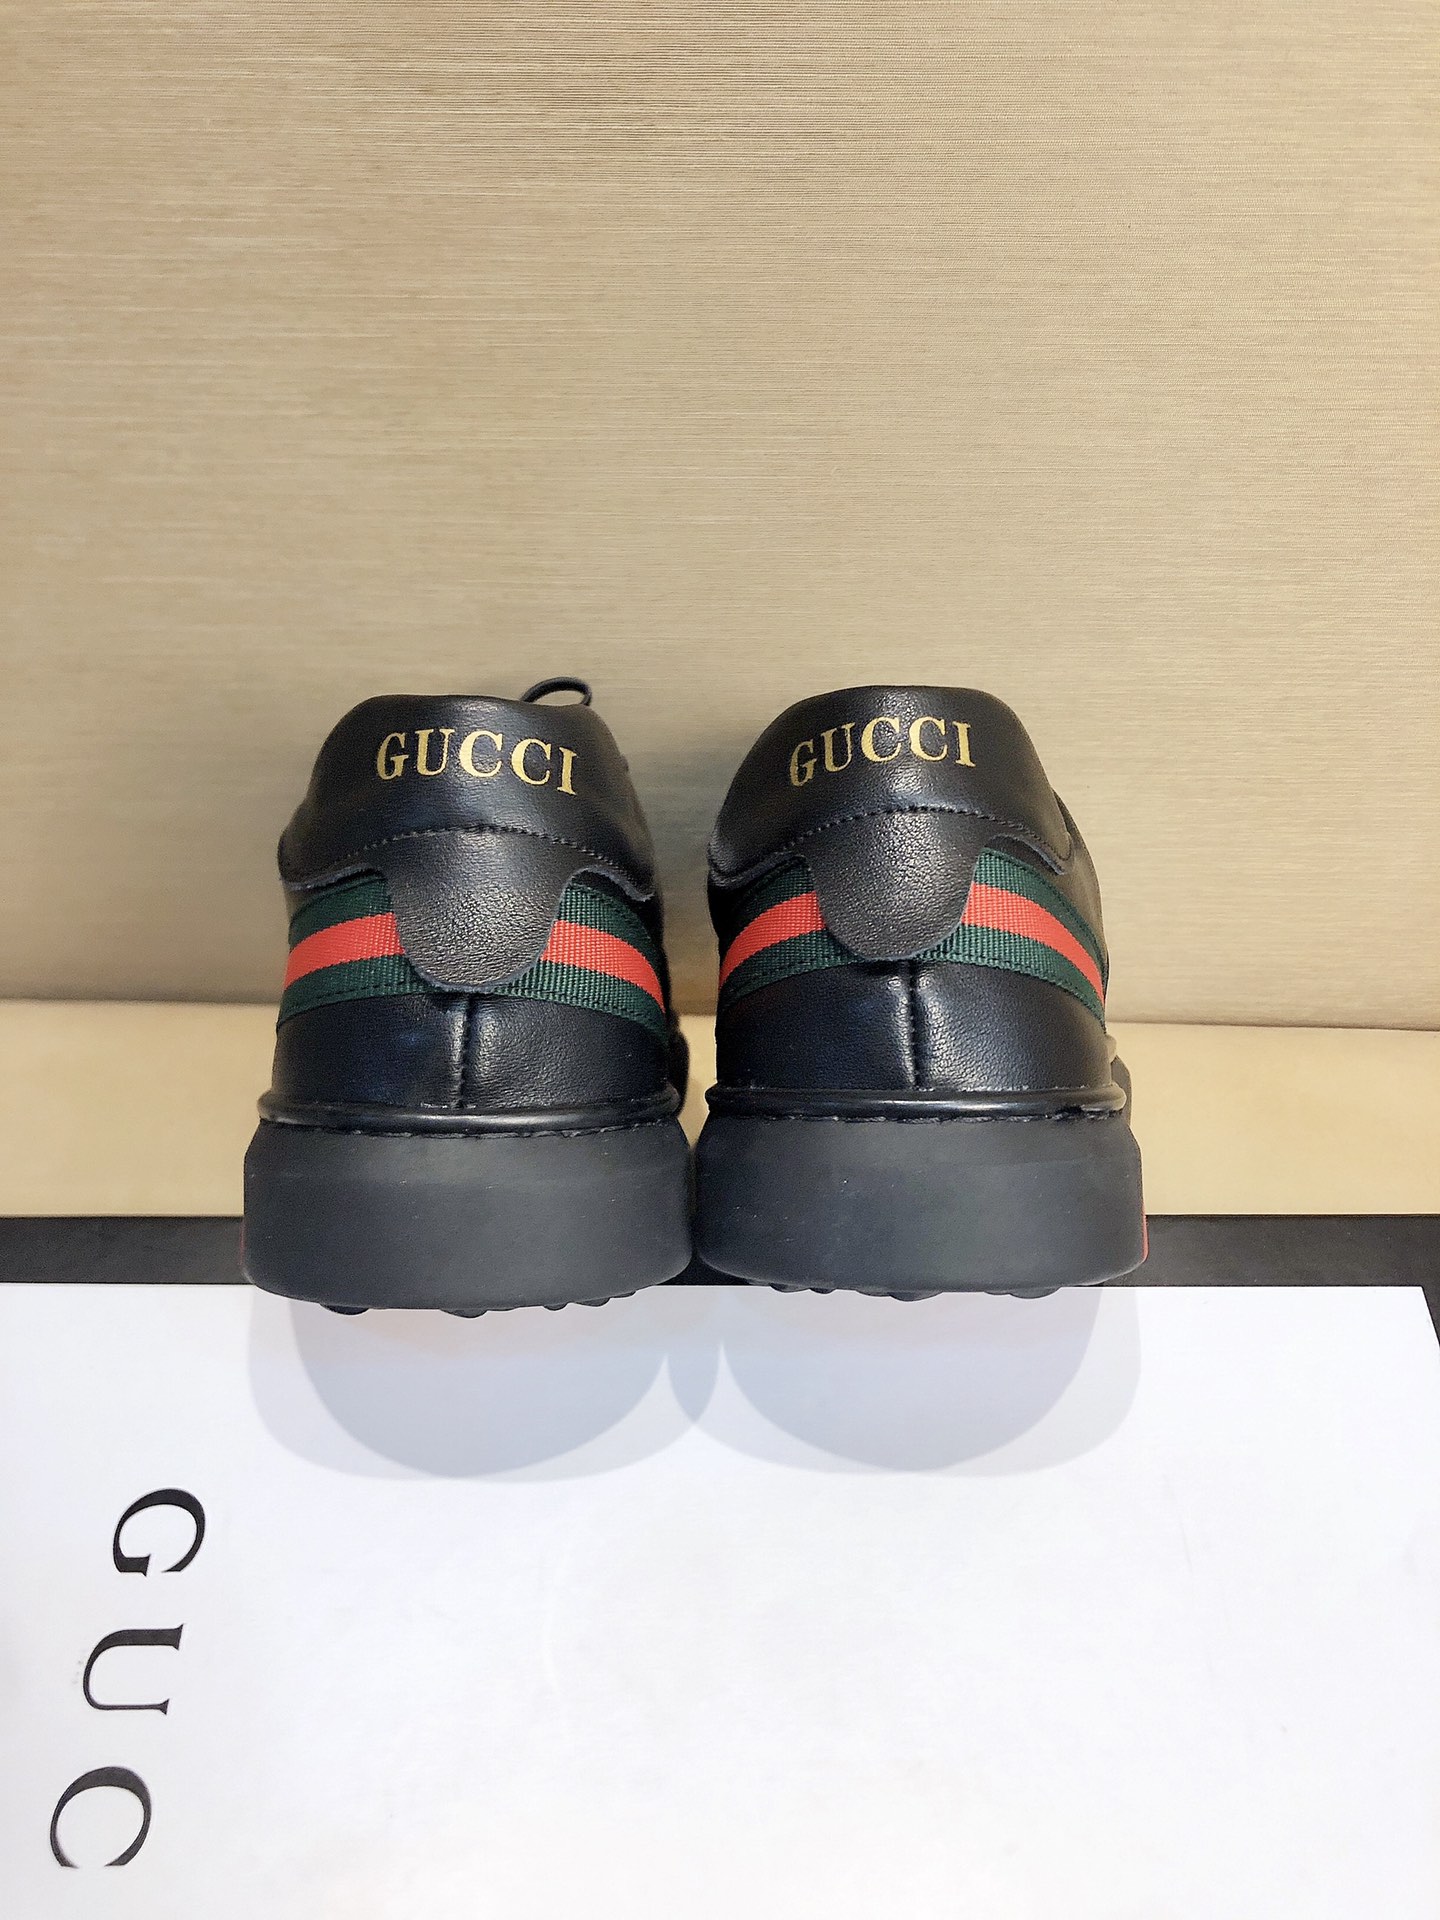 男士精品鞋子 休闲四季鞋系列 有鞋带系列 织物系列  品牌名称:gucci